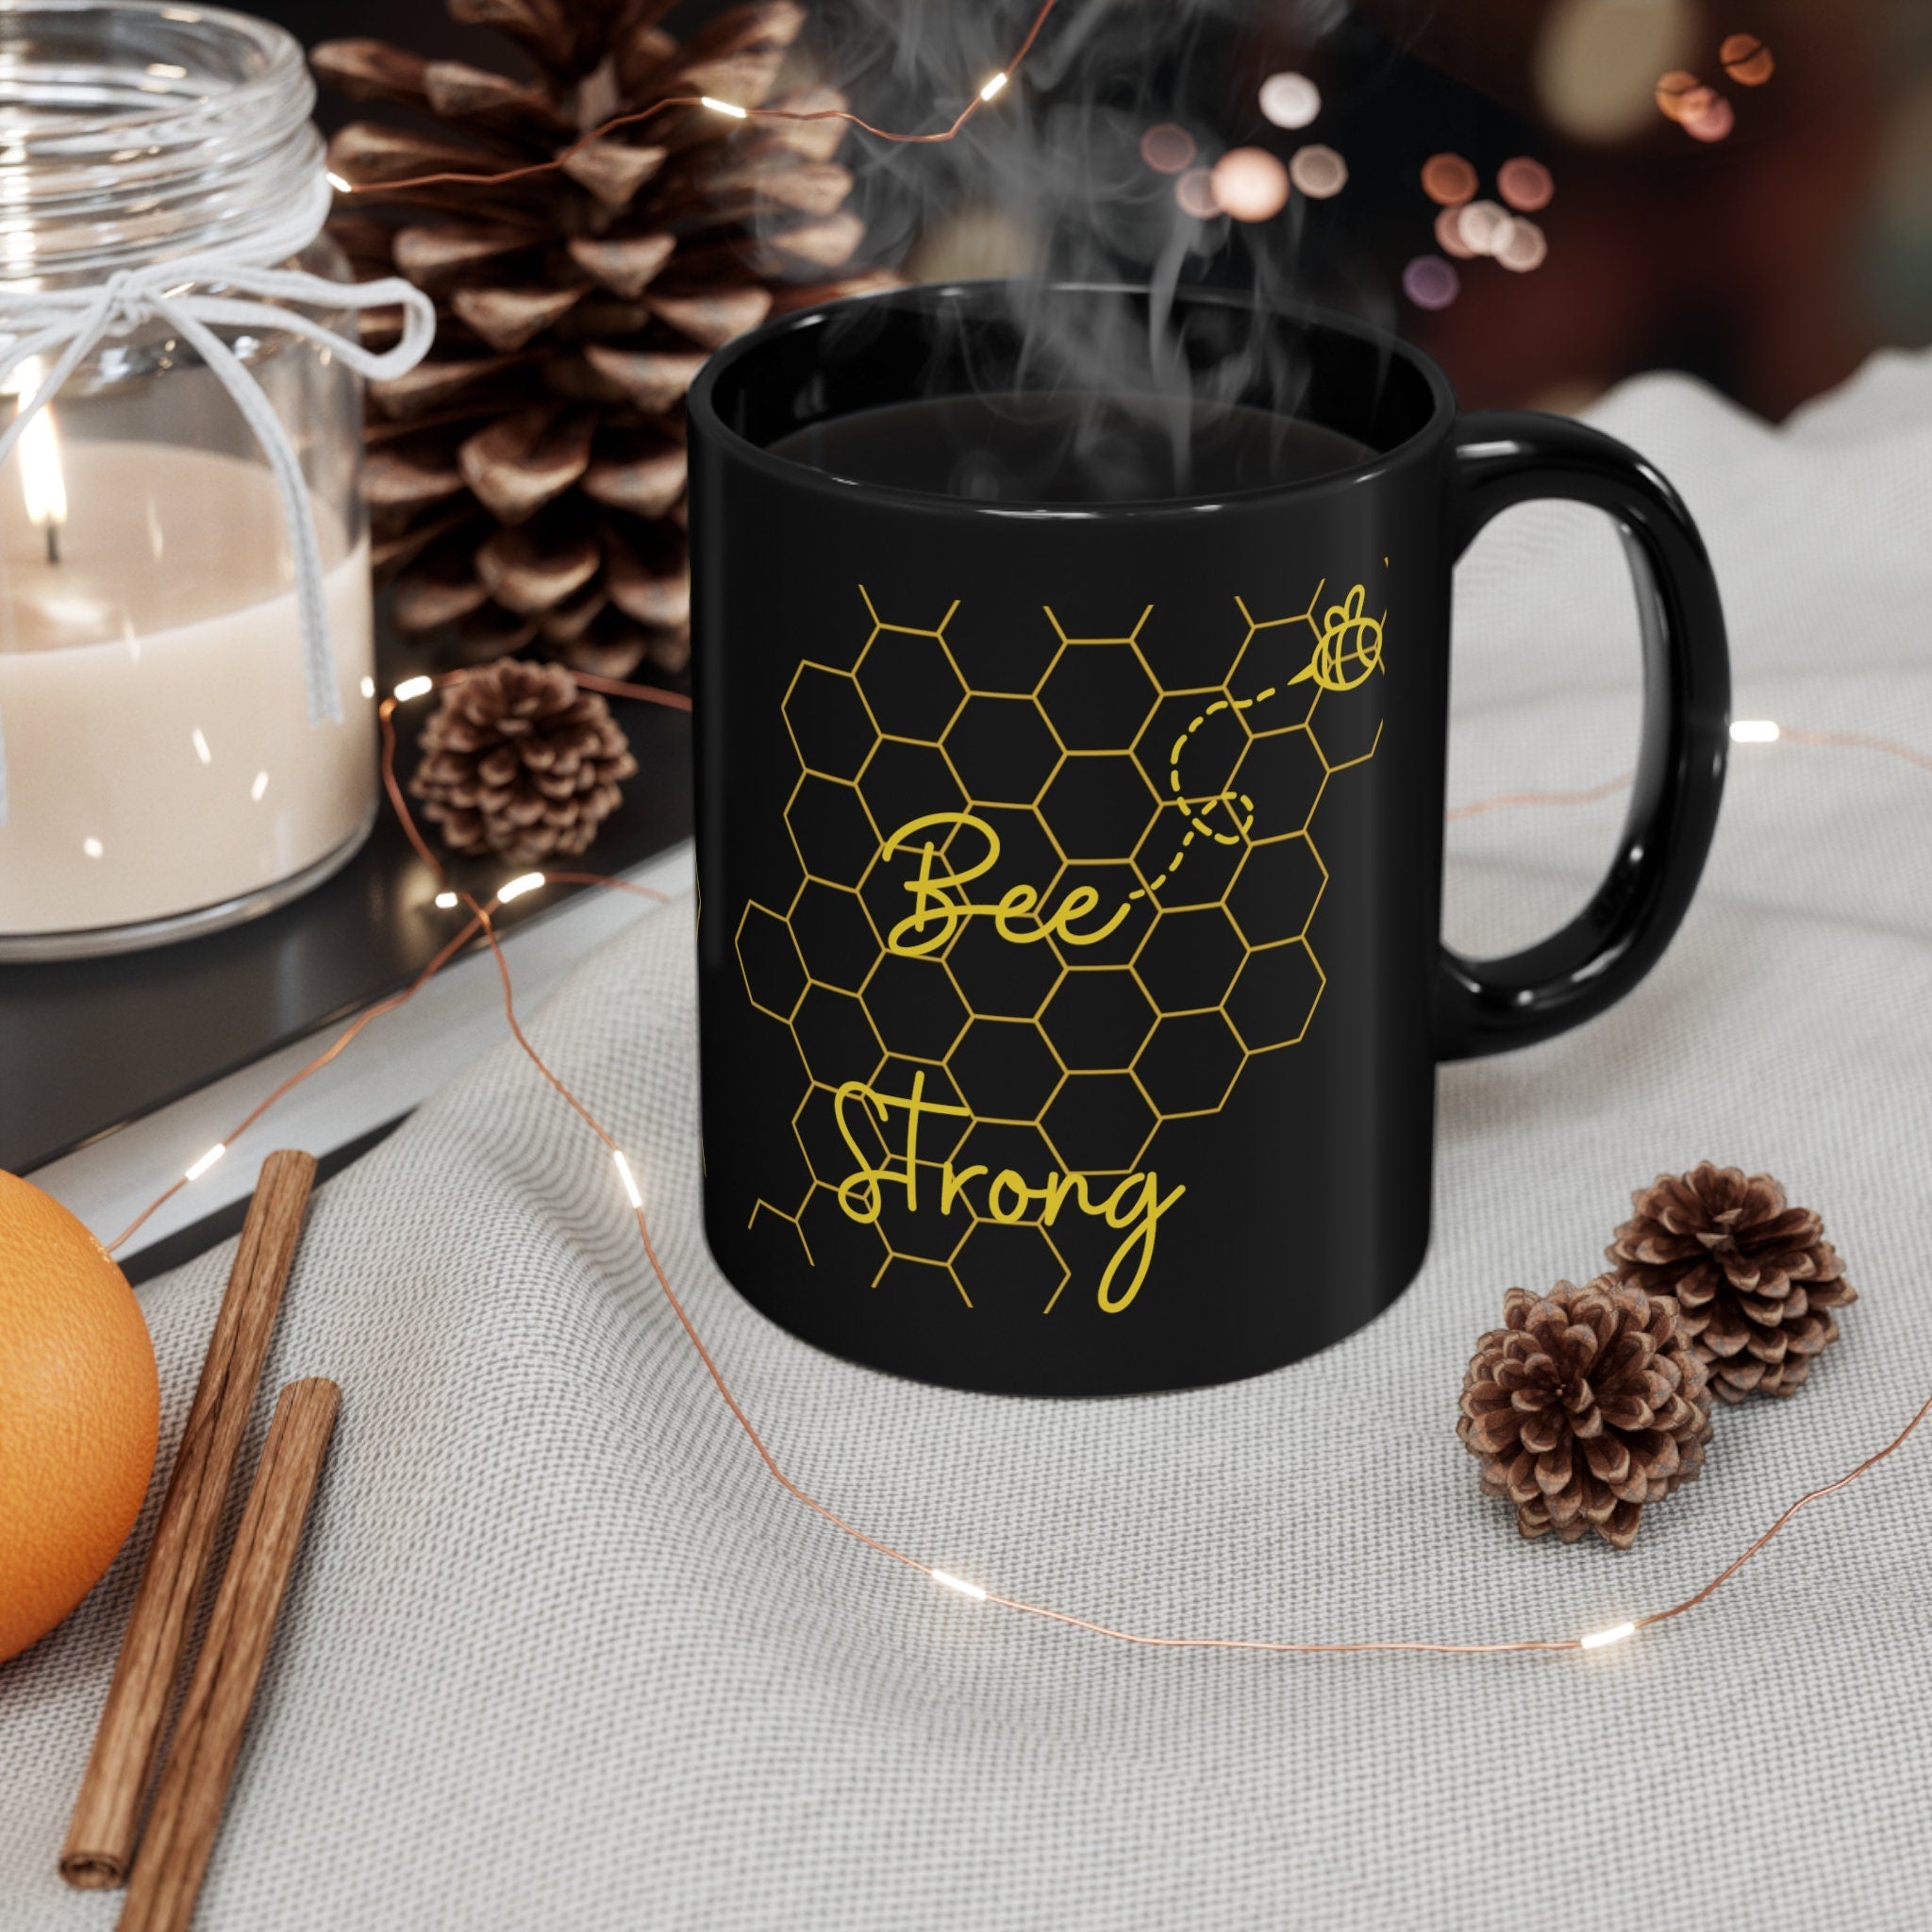 Bee Strong 11oz Black Mug Inspirational Encouraging Mother Gift Woman Mug Self Confidence Great Christmas Gift Perfect Gift